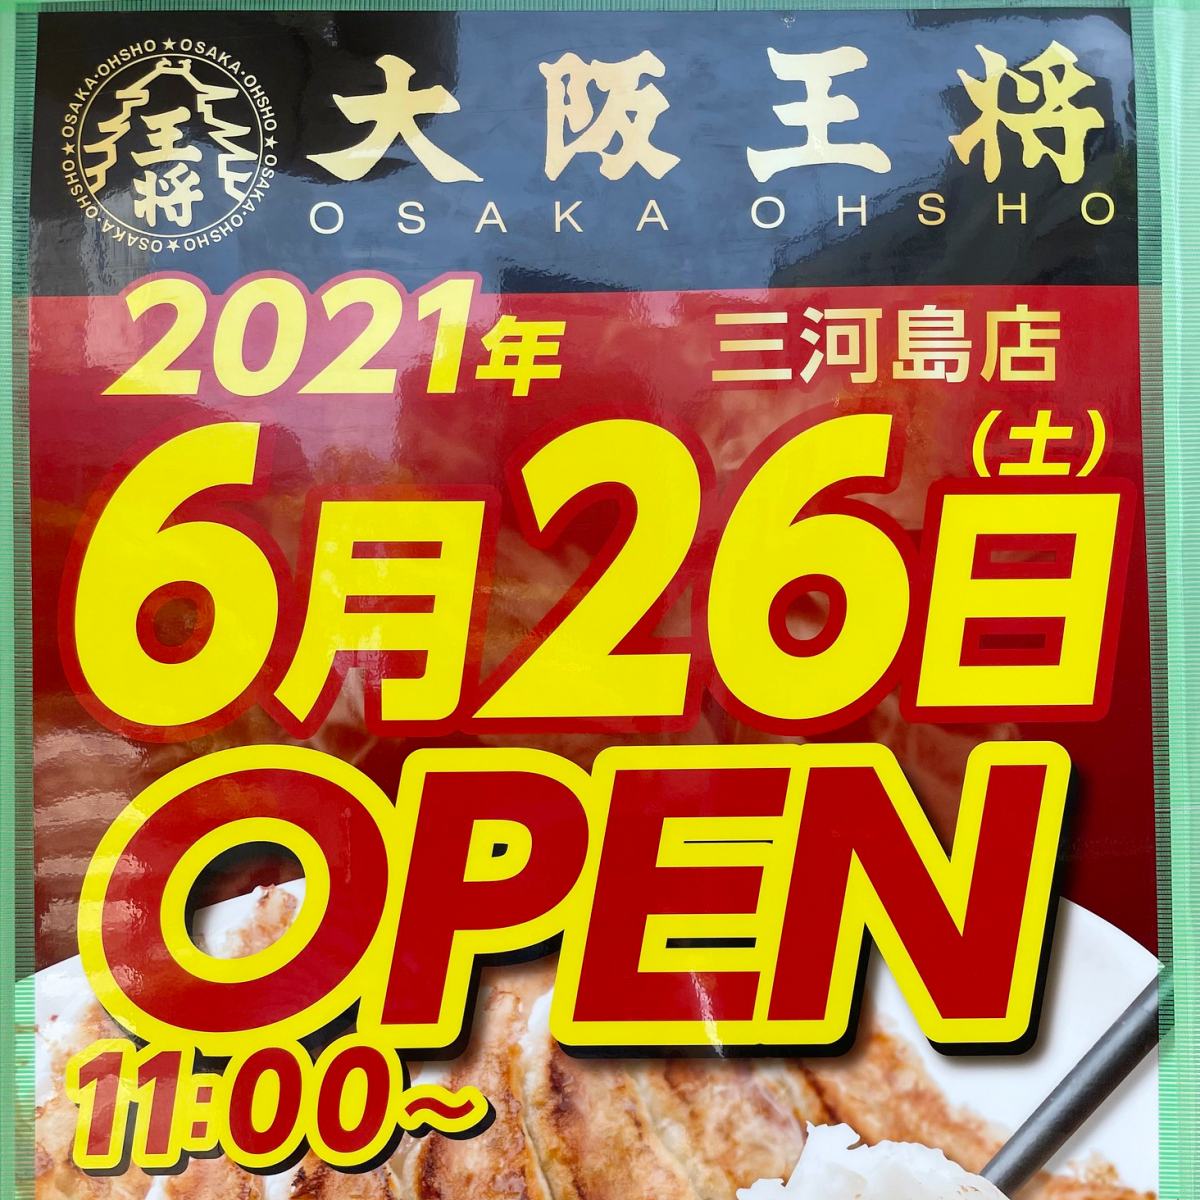 21年6月26日 土 にオープンする大阪王将 三河島店では生餃子のオープニング特売もあり 荒川区のはなし